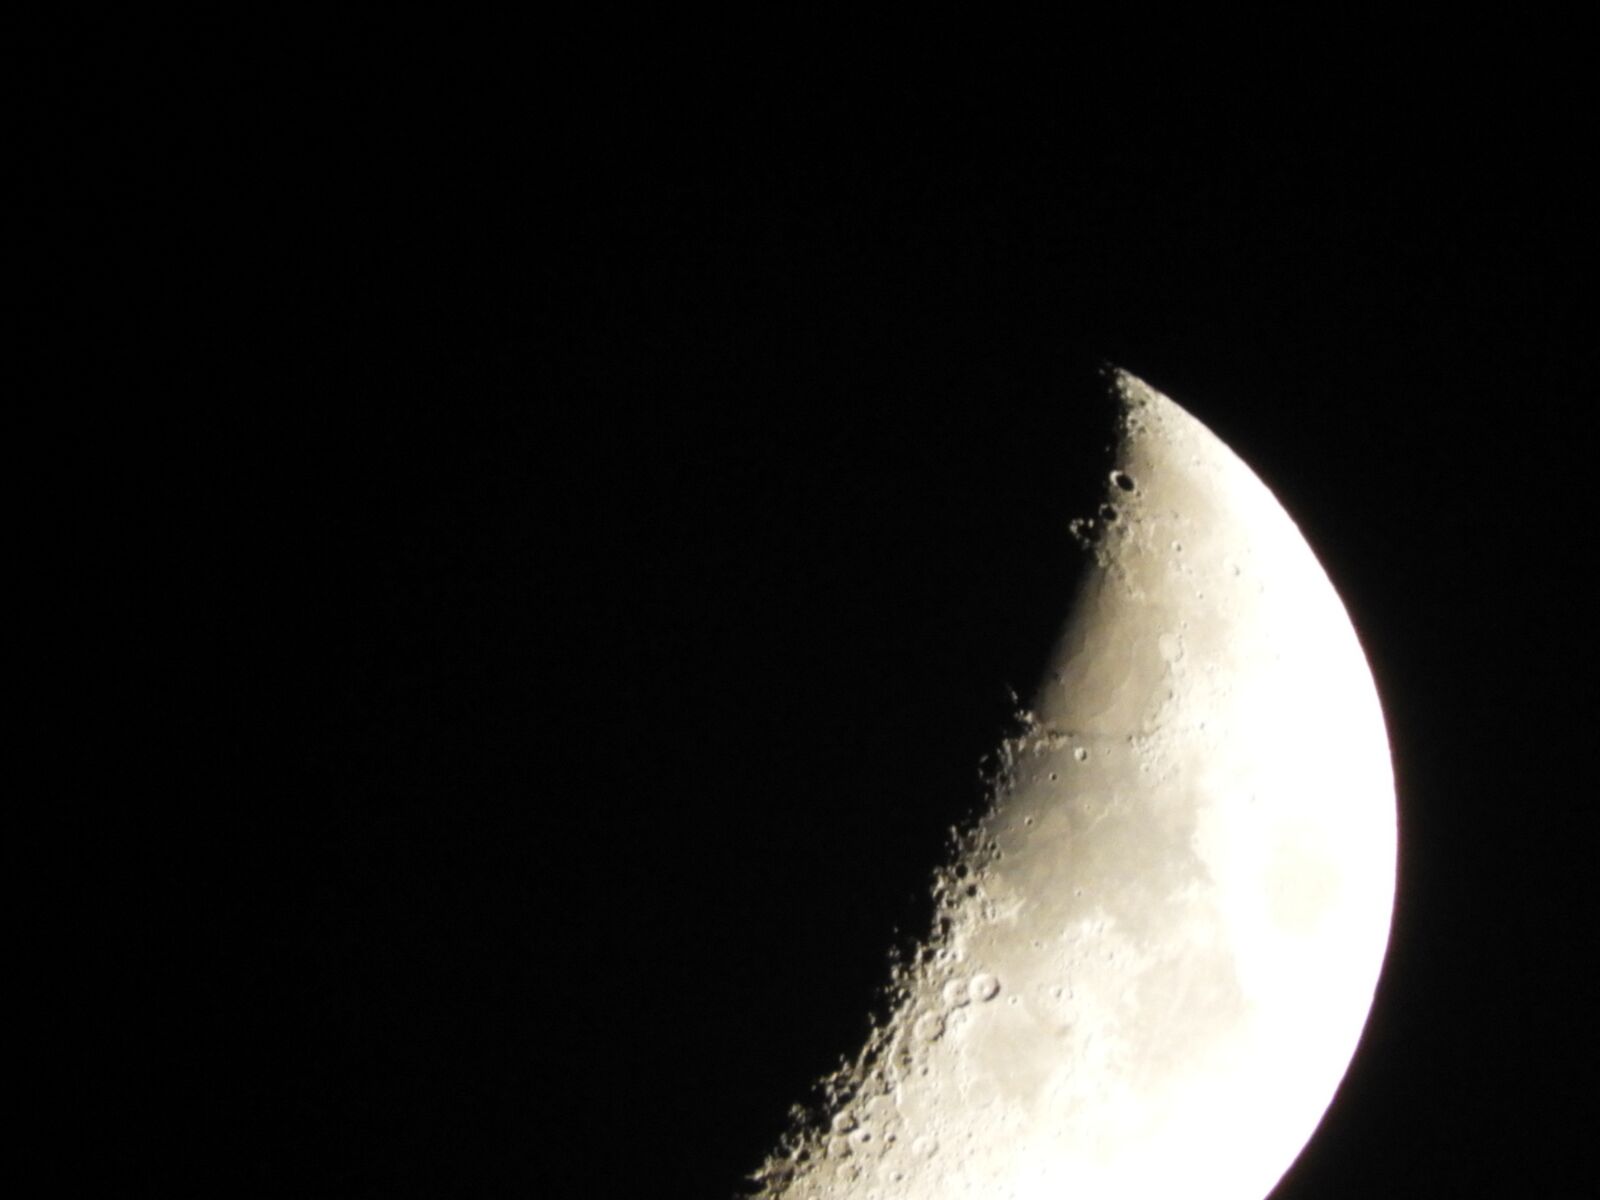 Nikon Coolpix B700 sample photo. Astronomía, luna, noche photography